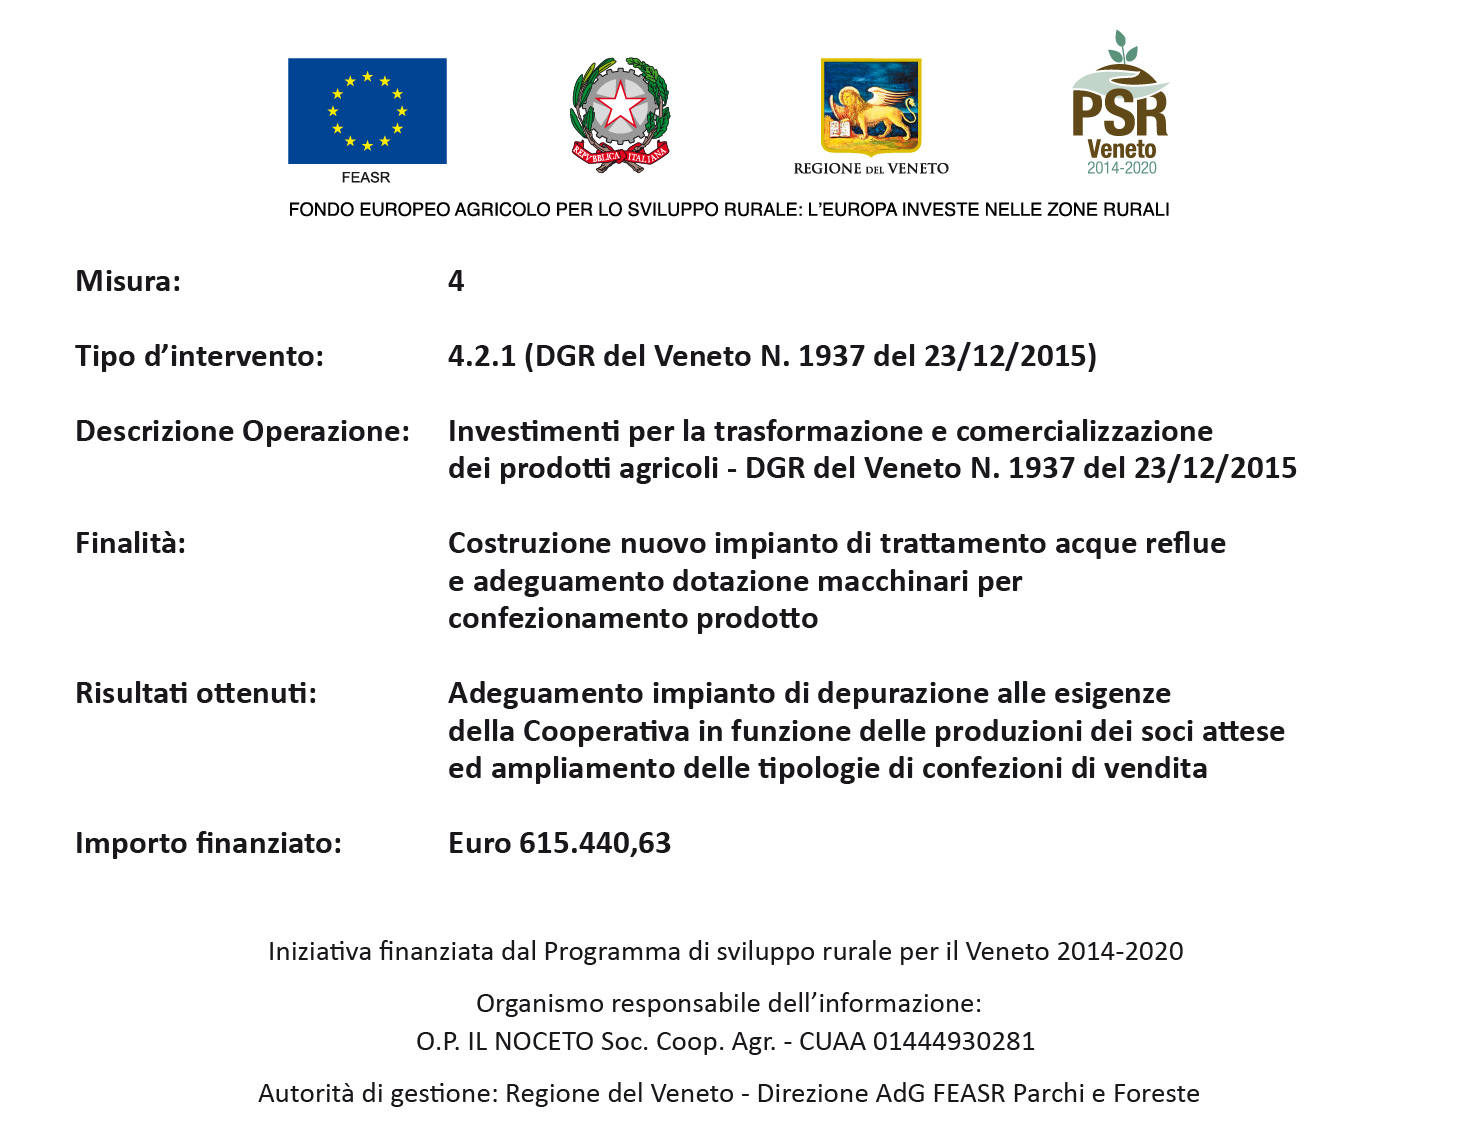 Iniziativa finanziaria dal Programma di Sviluppo rurale per il Veneto 2014-2020